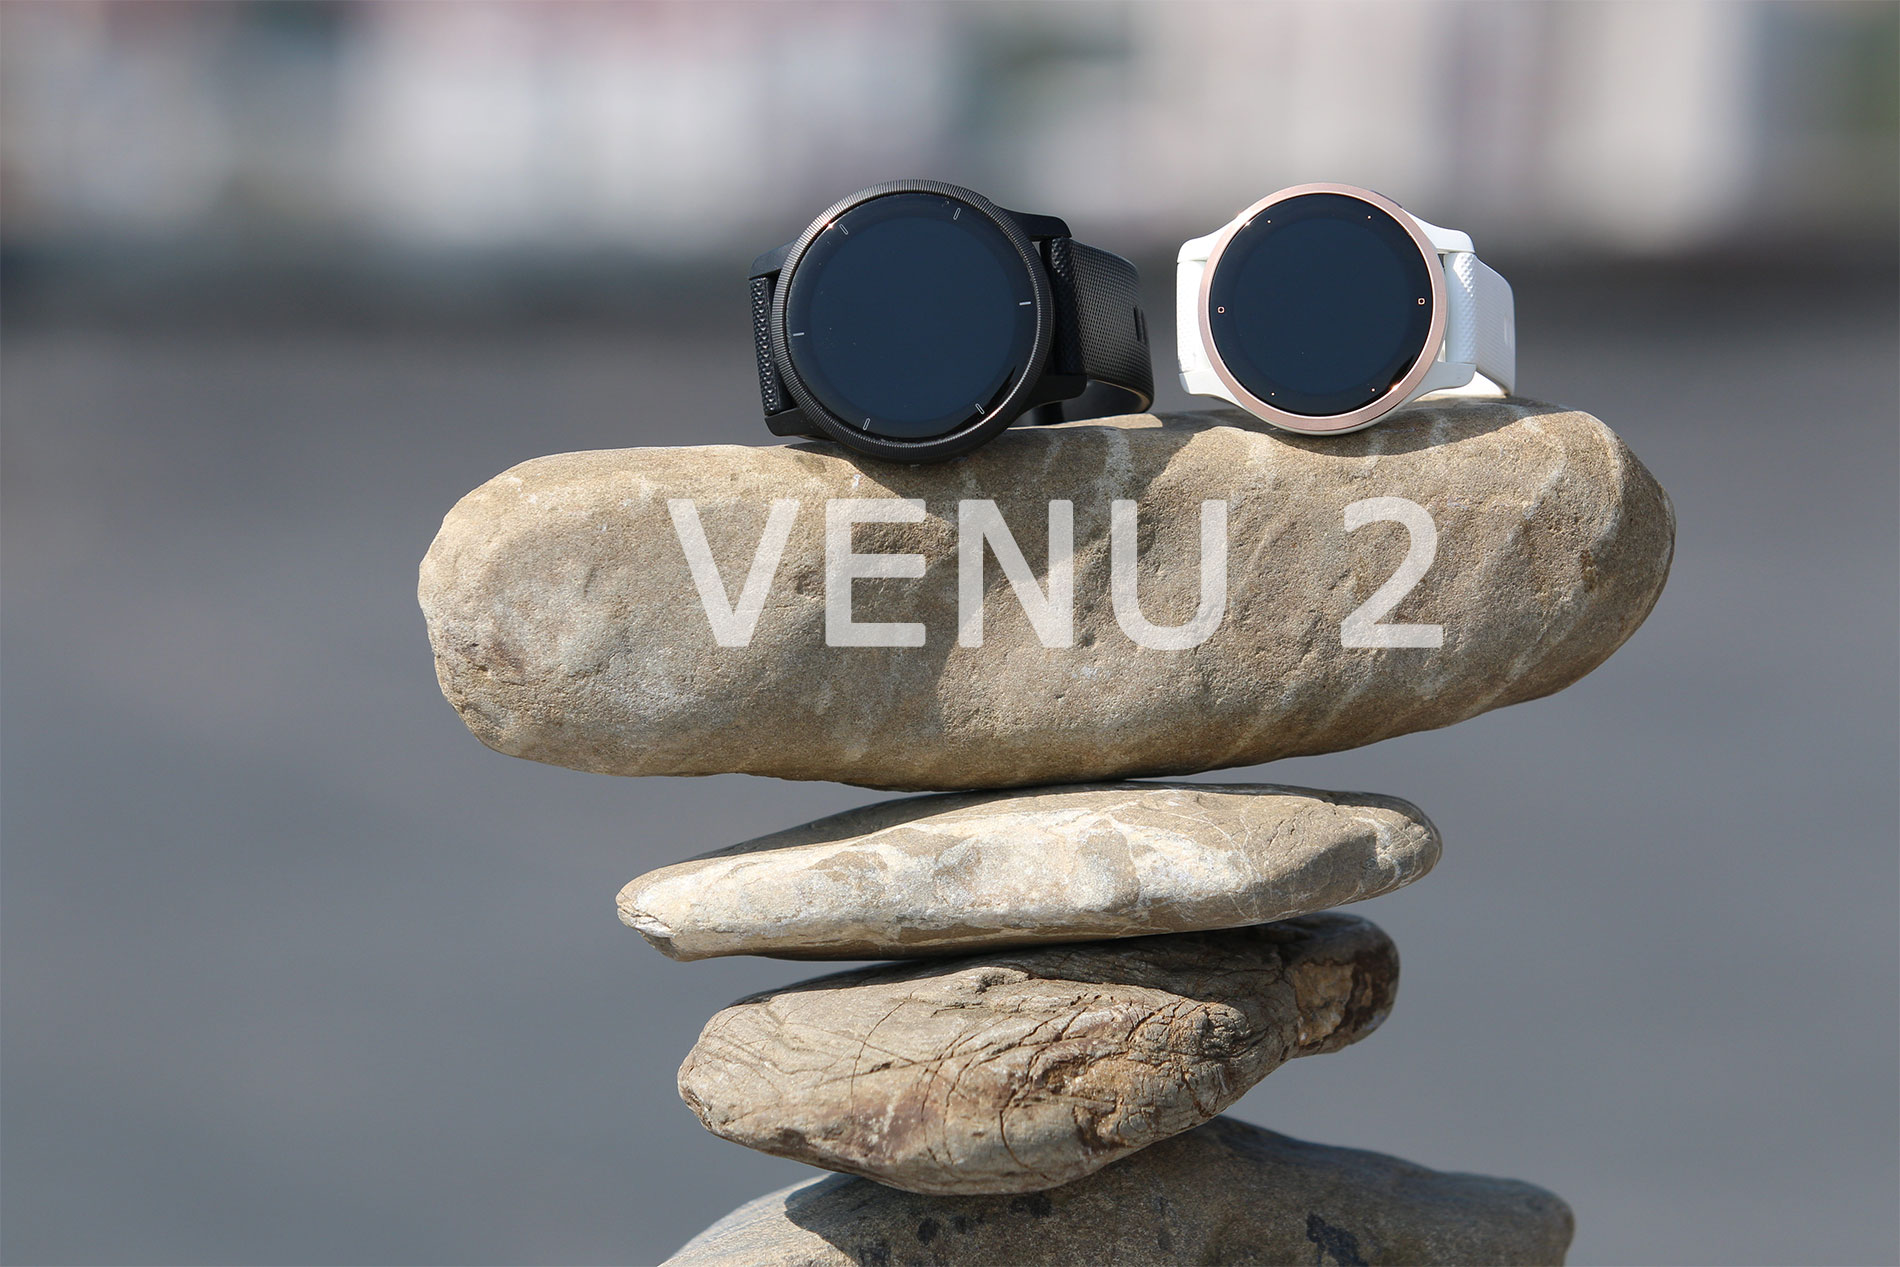 Обзор часов Garmin Venu 2 - 2S